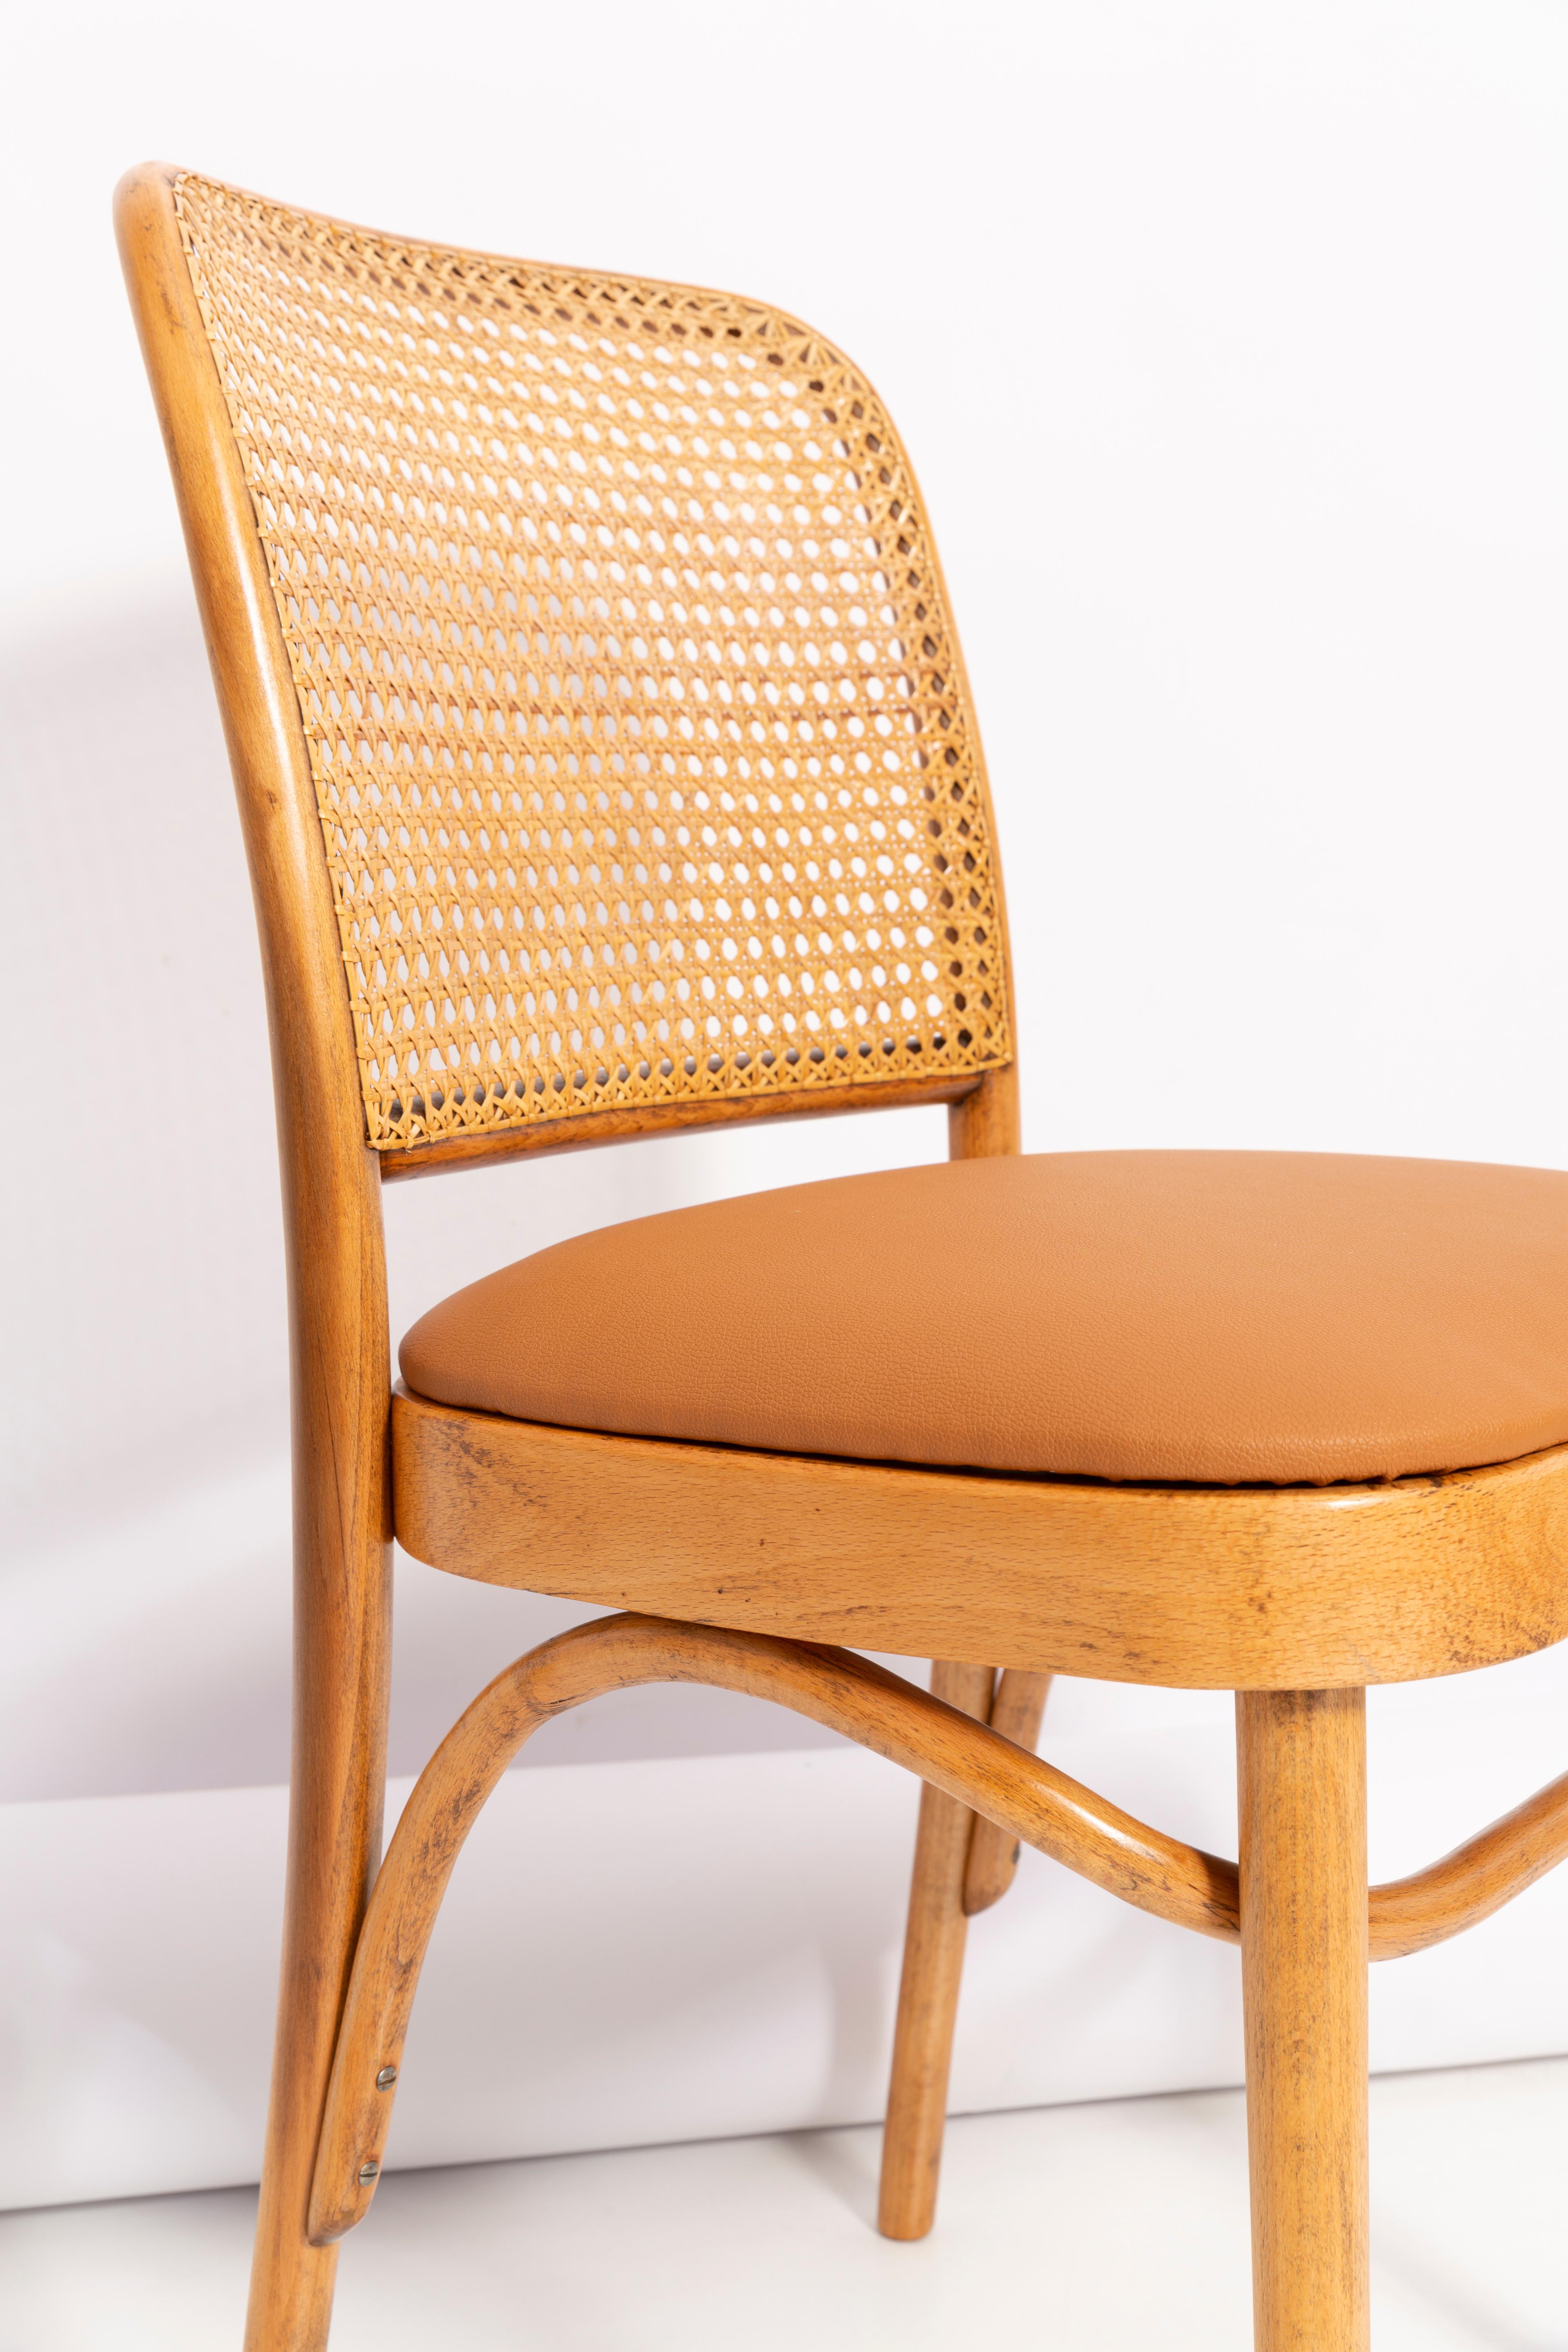 Schöne Stühle aus Rattan, Kamellederimitat und Holz. Sie wurden in der Holzverarbeitungsfabrik Thonet hergestellt und von uns gründlich renoviert. Die Konstruktion ist aus Buchenholz mit Wasserbeize Eiche braun Farbe gefärbt gemacht. Die Stühle sind